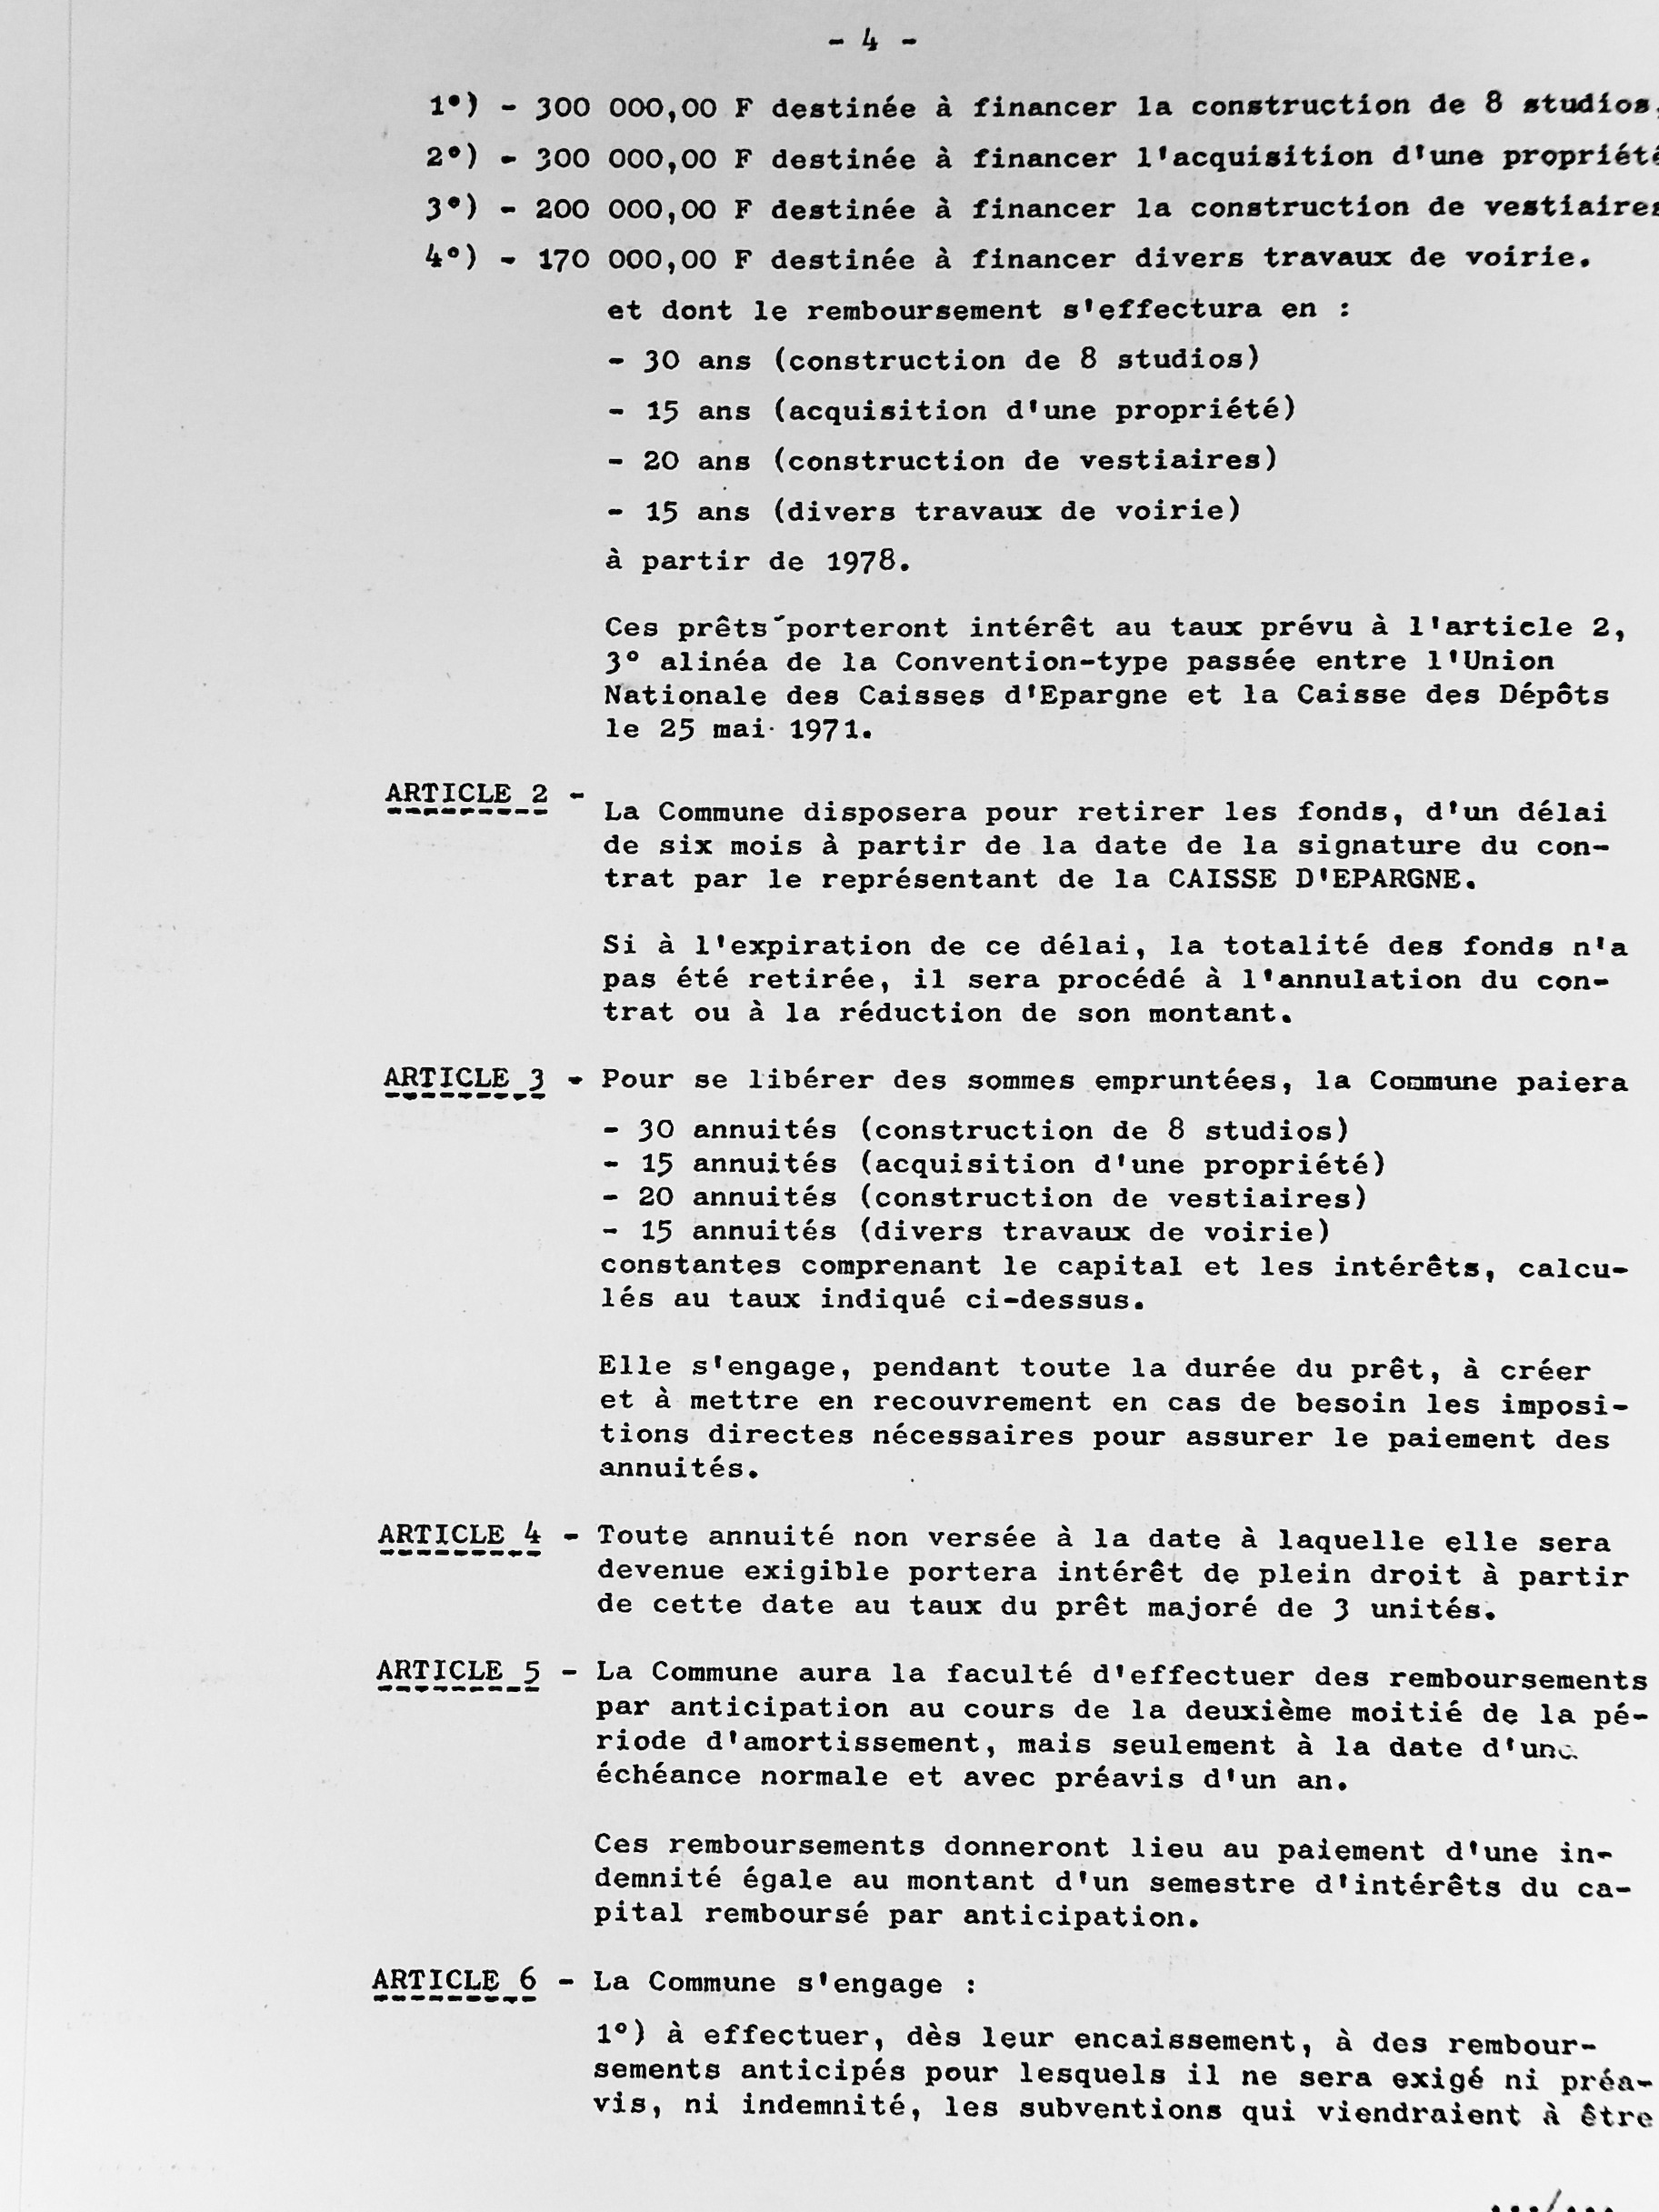 Feuillet_088B-1974-1977.jpg